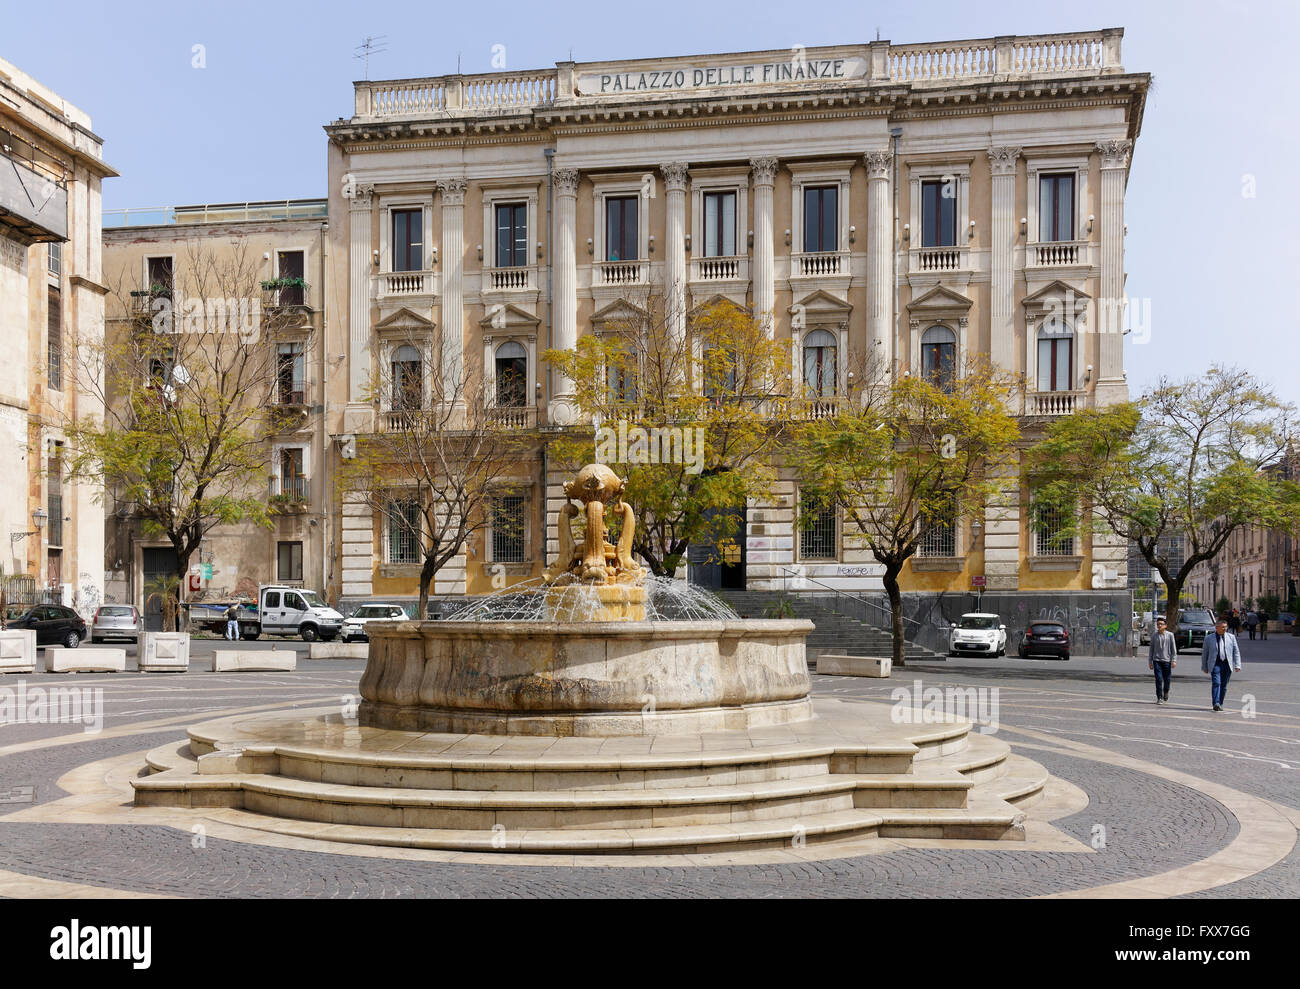 Palazzo Delle finanze and fountain in the Piazza Vincenzo Bellini Stock Photo